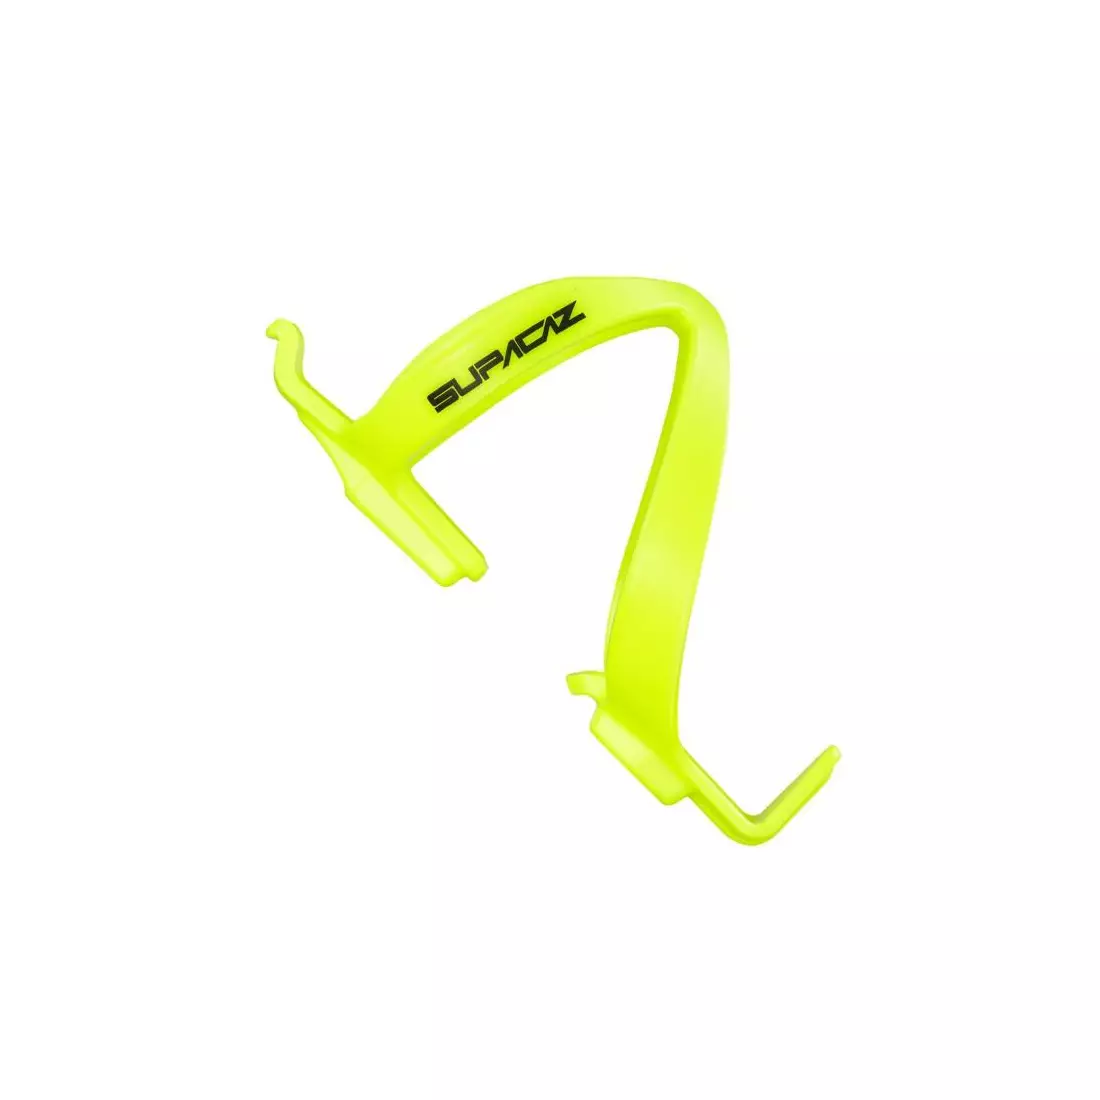 SUPACAZ cușcă pentru sticlă de apă pentru bicicletă POLY yellow neon CG-33